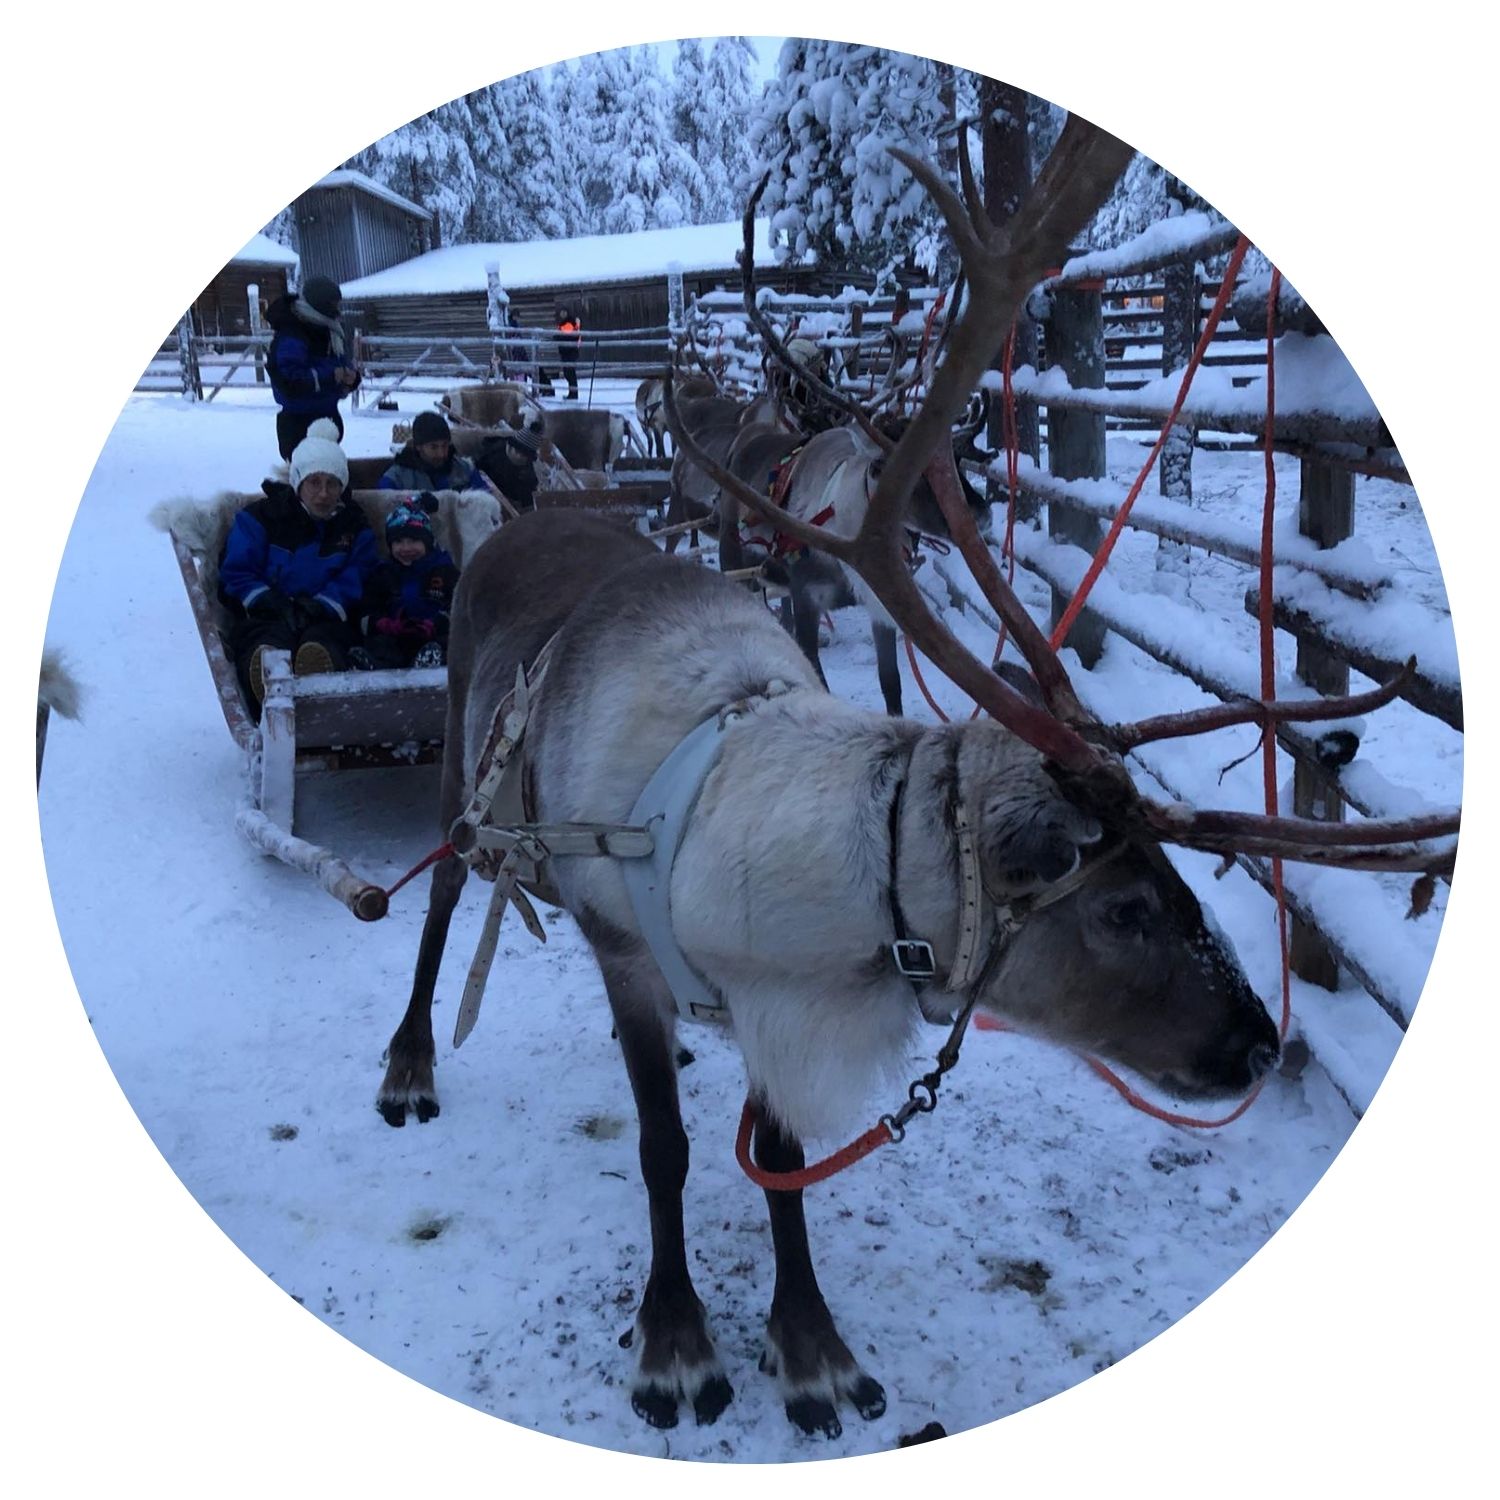 Une famille profite d'une balade en charrette tirée par des cerfs à travers les rues enneigées d'une ville en Finlande, capturant la magie de l'hiver nordique.